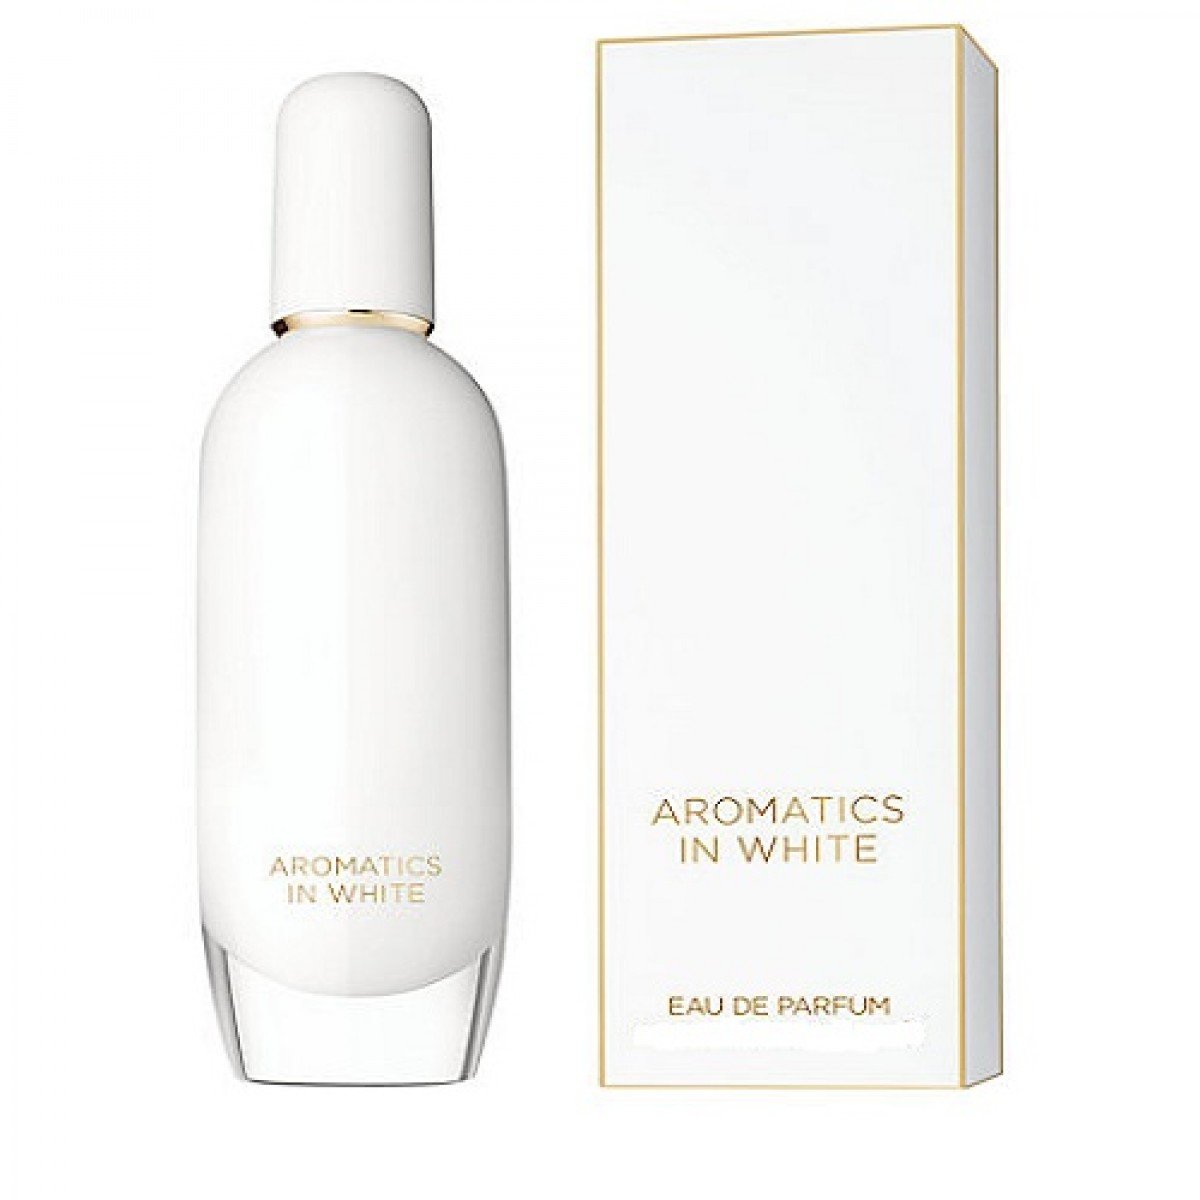 Aromatics in White Eau de Parfum 100ml - D'Scentsation